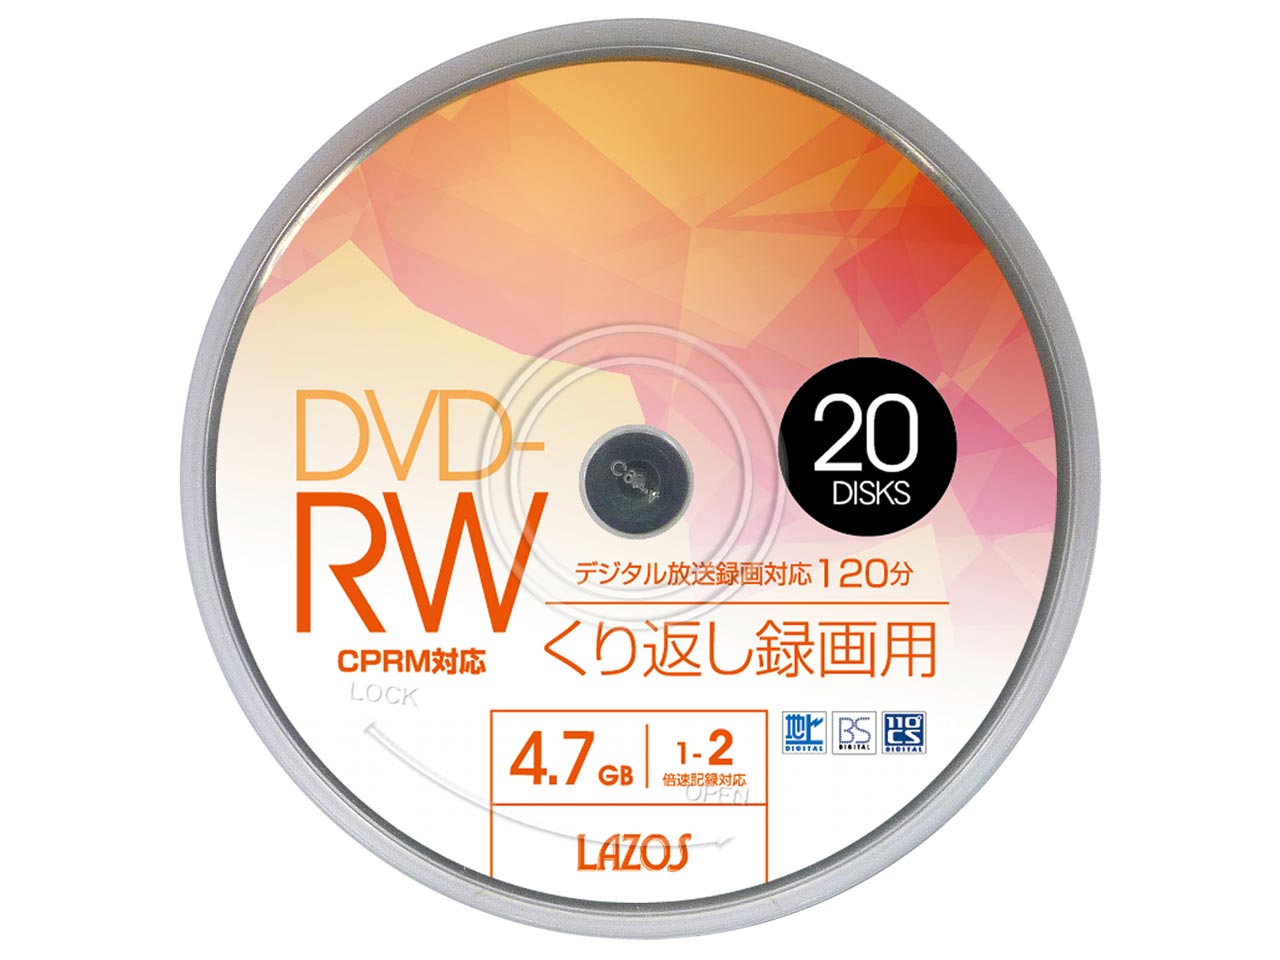 価格 Com Lazos L Drwp Dvd Rw 2倍速 枚組 の製品画像